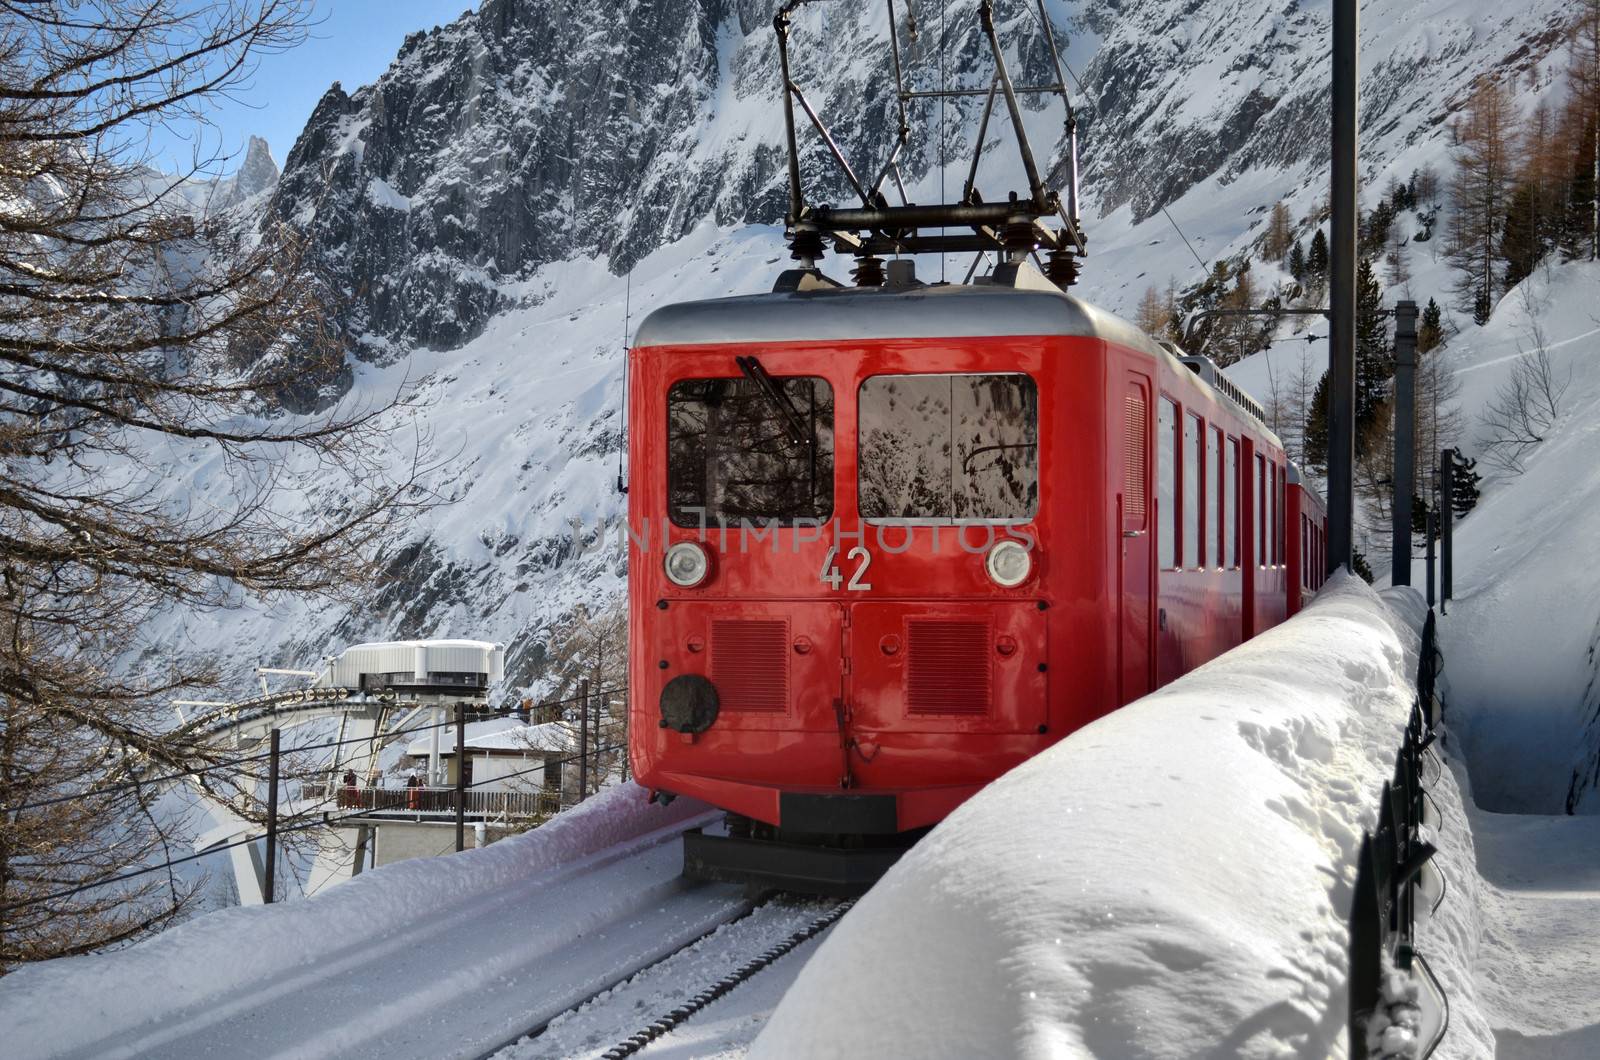 Scenic mountain train in snow by artofphoto